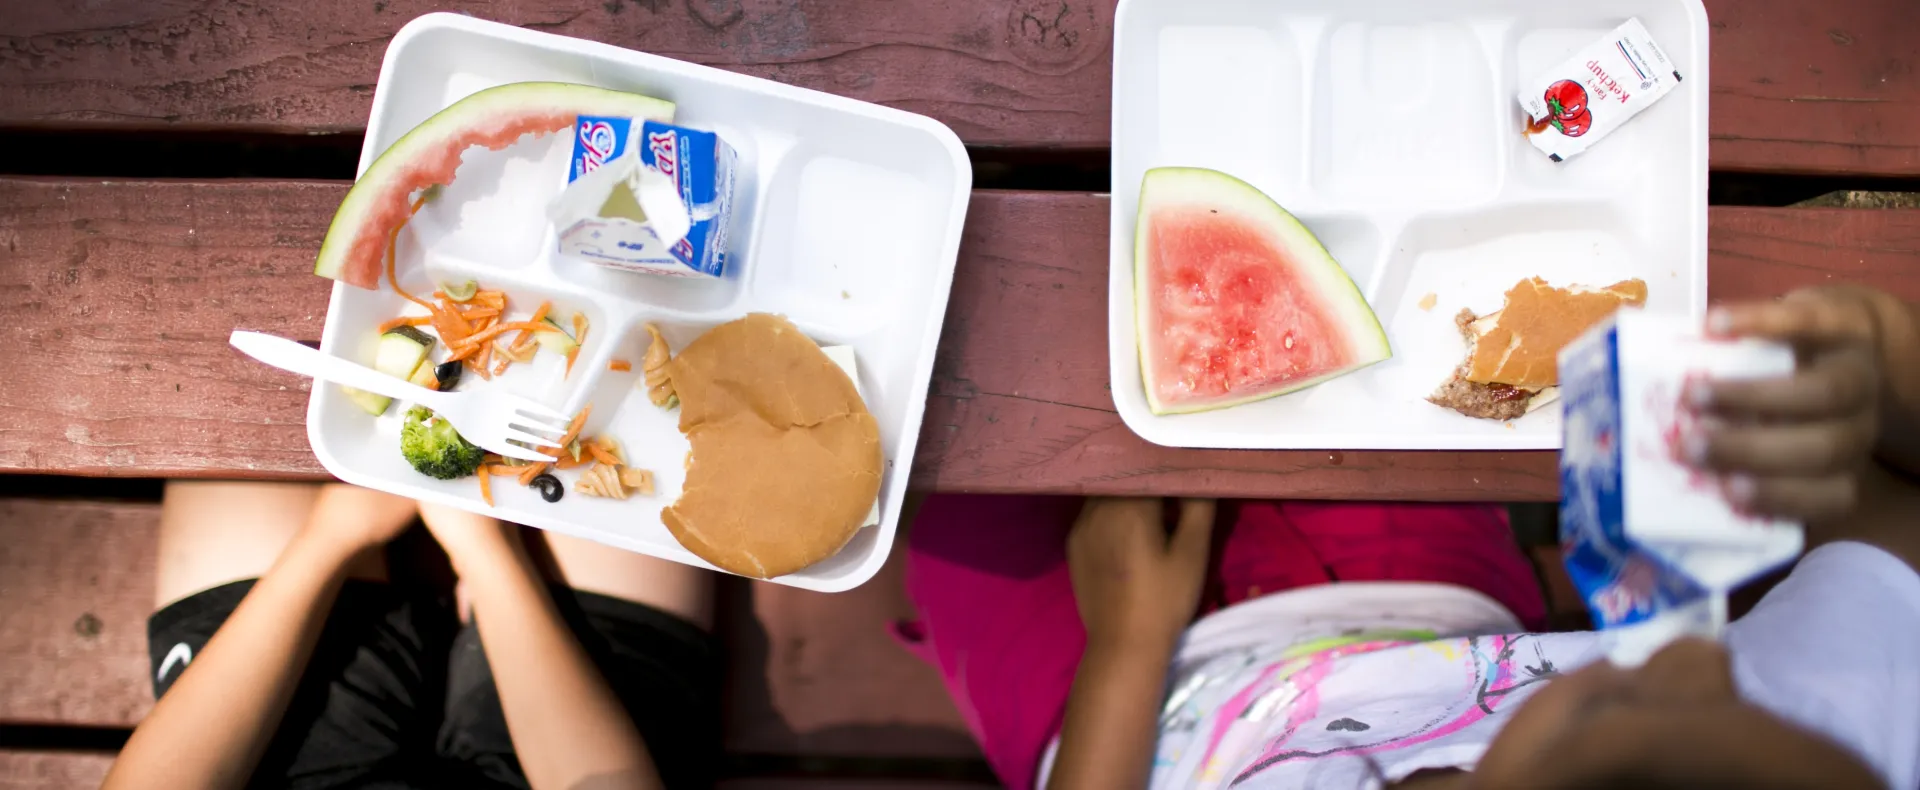 Kids eating free summer meals in their neighborhood